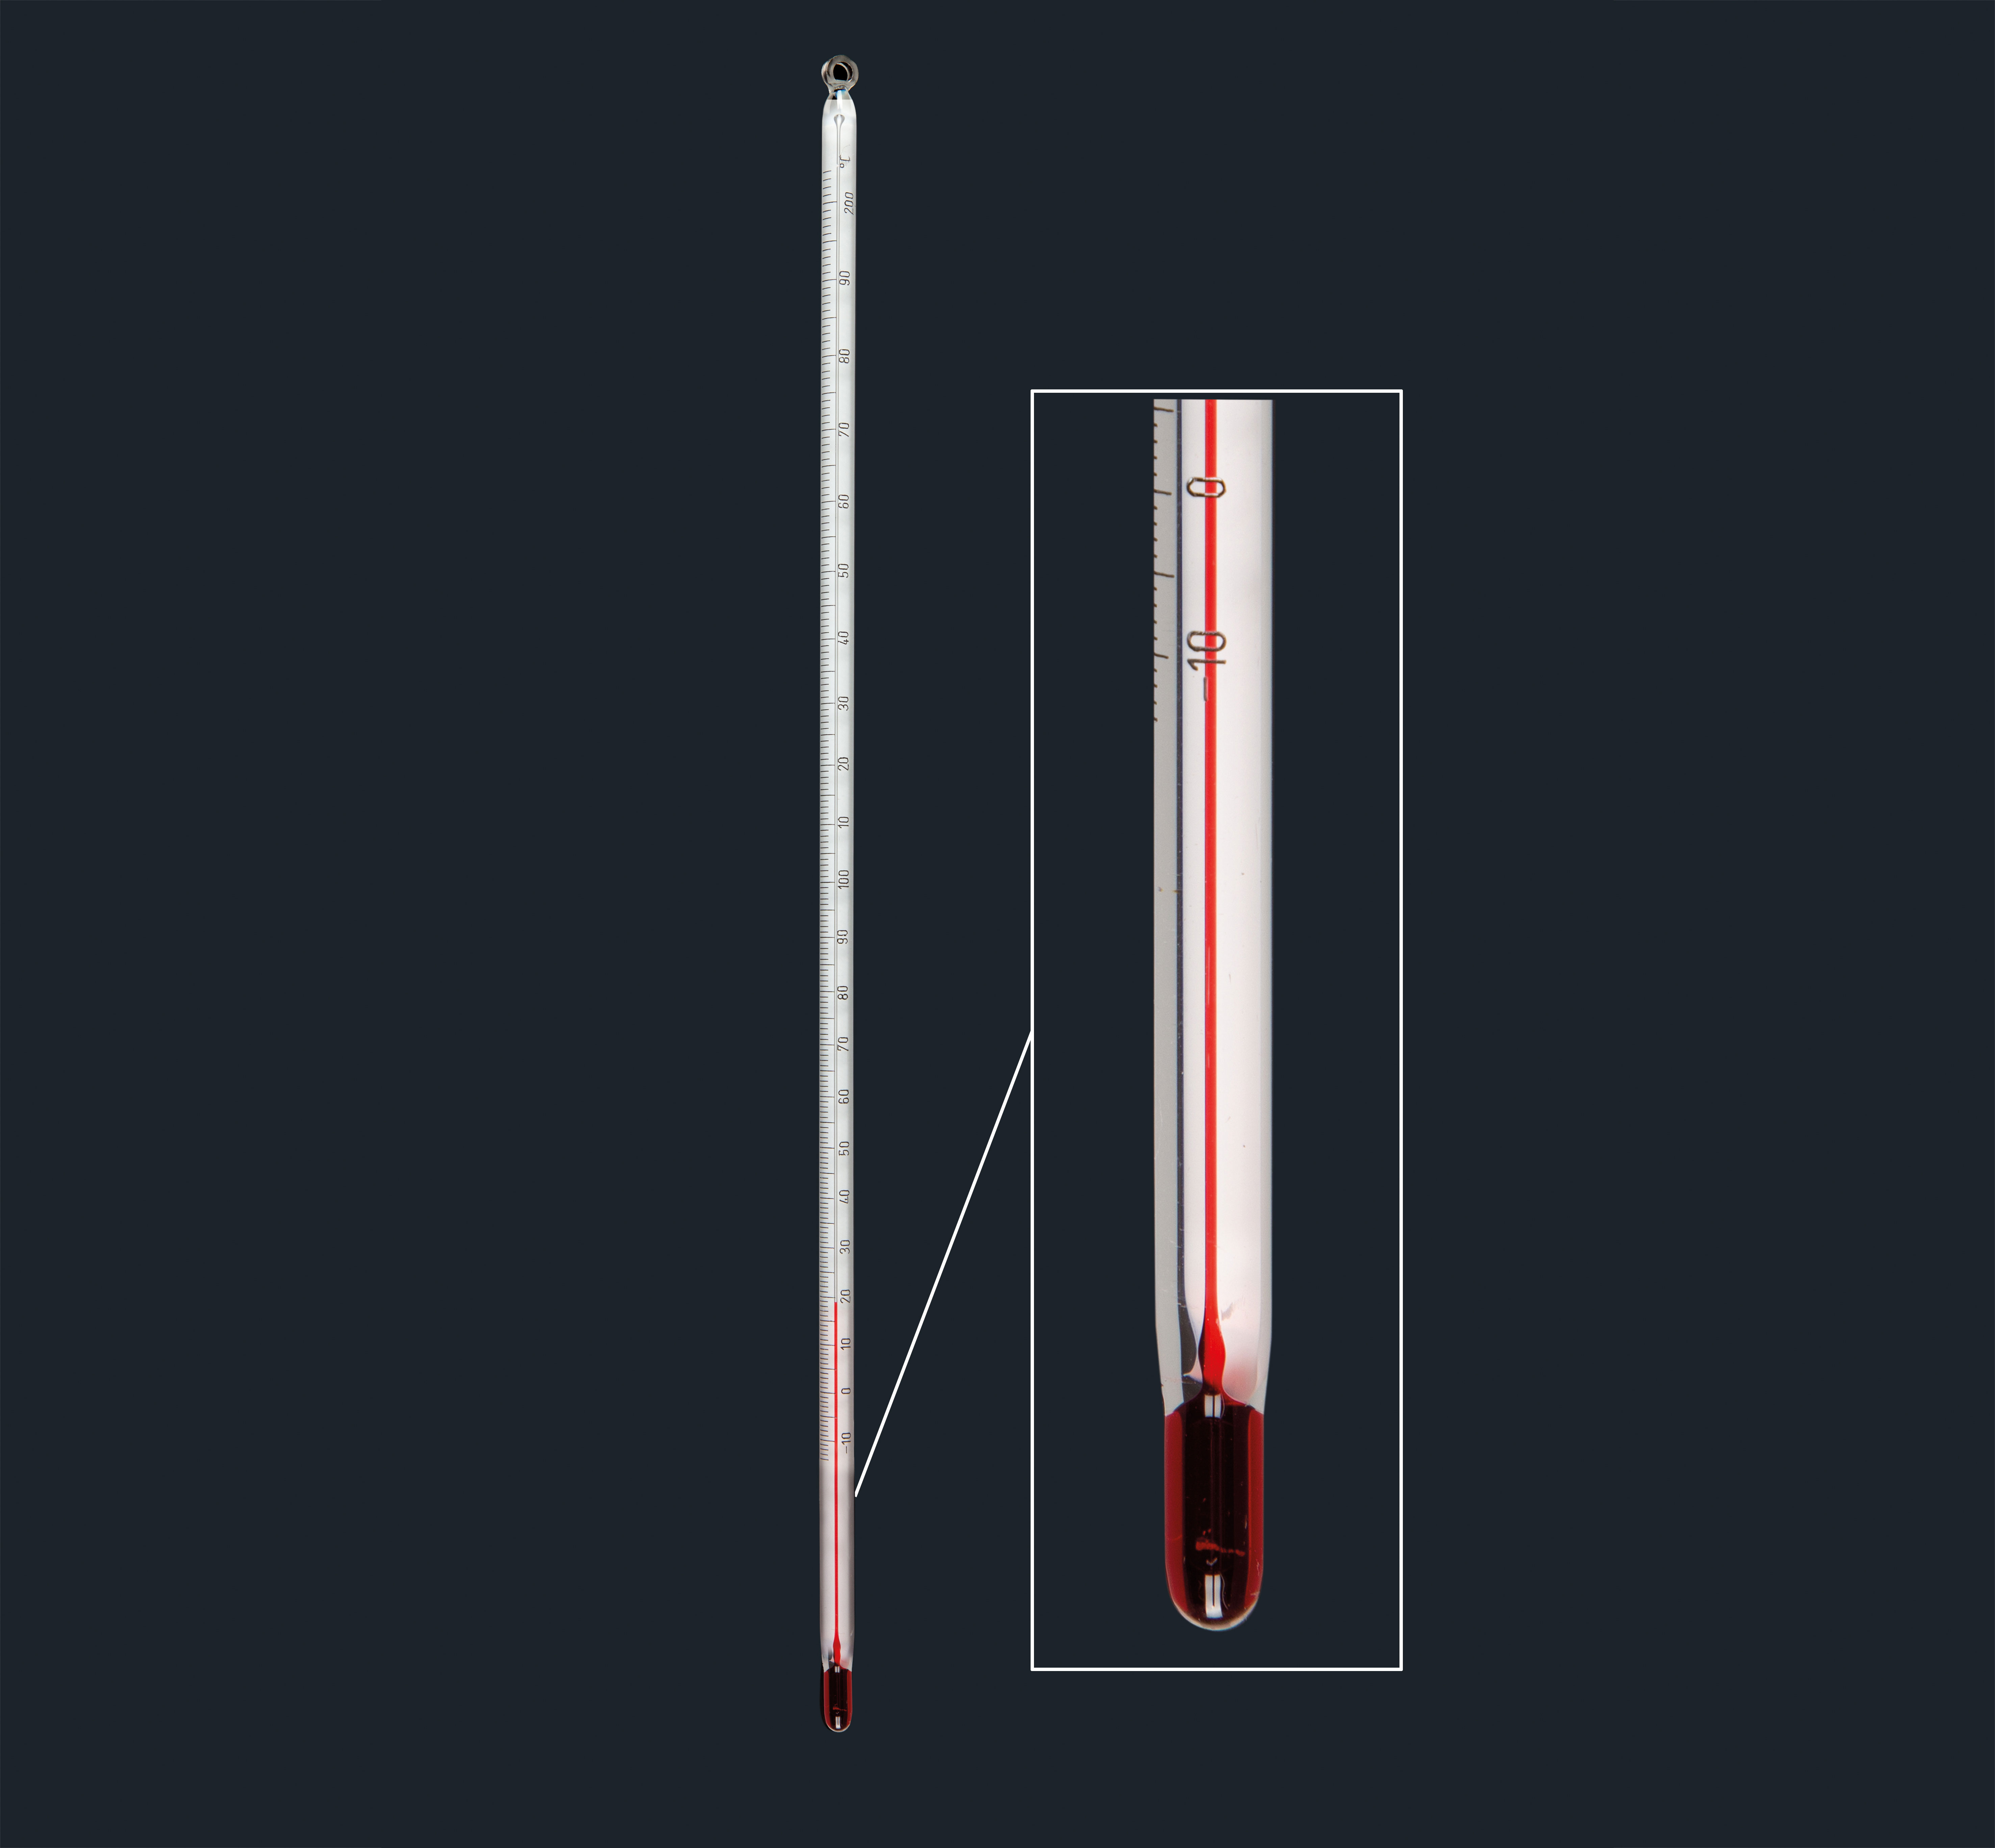 Termómetro de varilla franja blanca para uso general, líquido rojo, 5,5 a 6,5 mmø. Rango de medida (°C): - 10 a + 250. Longitud (mm): 300. División (°C): 1. Amarell. Certificado de fabrica por lote.&#x0D;